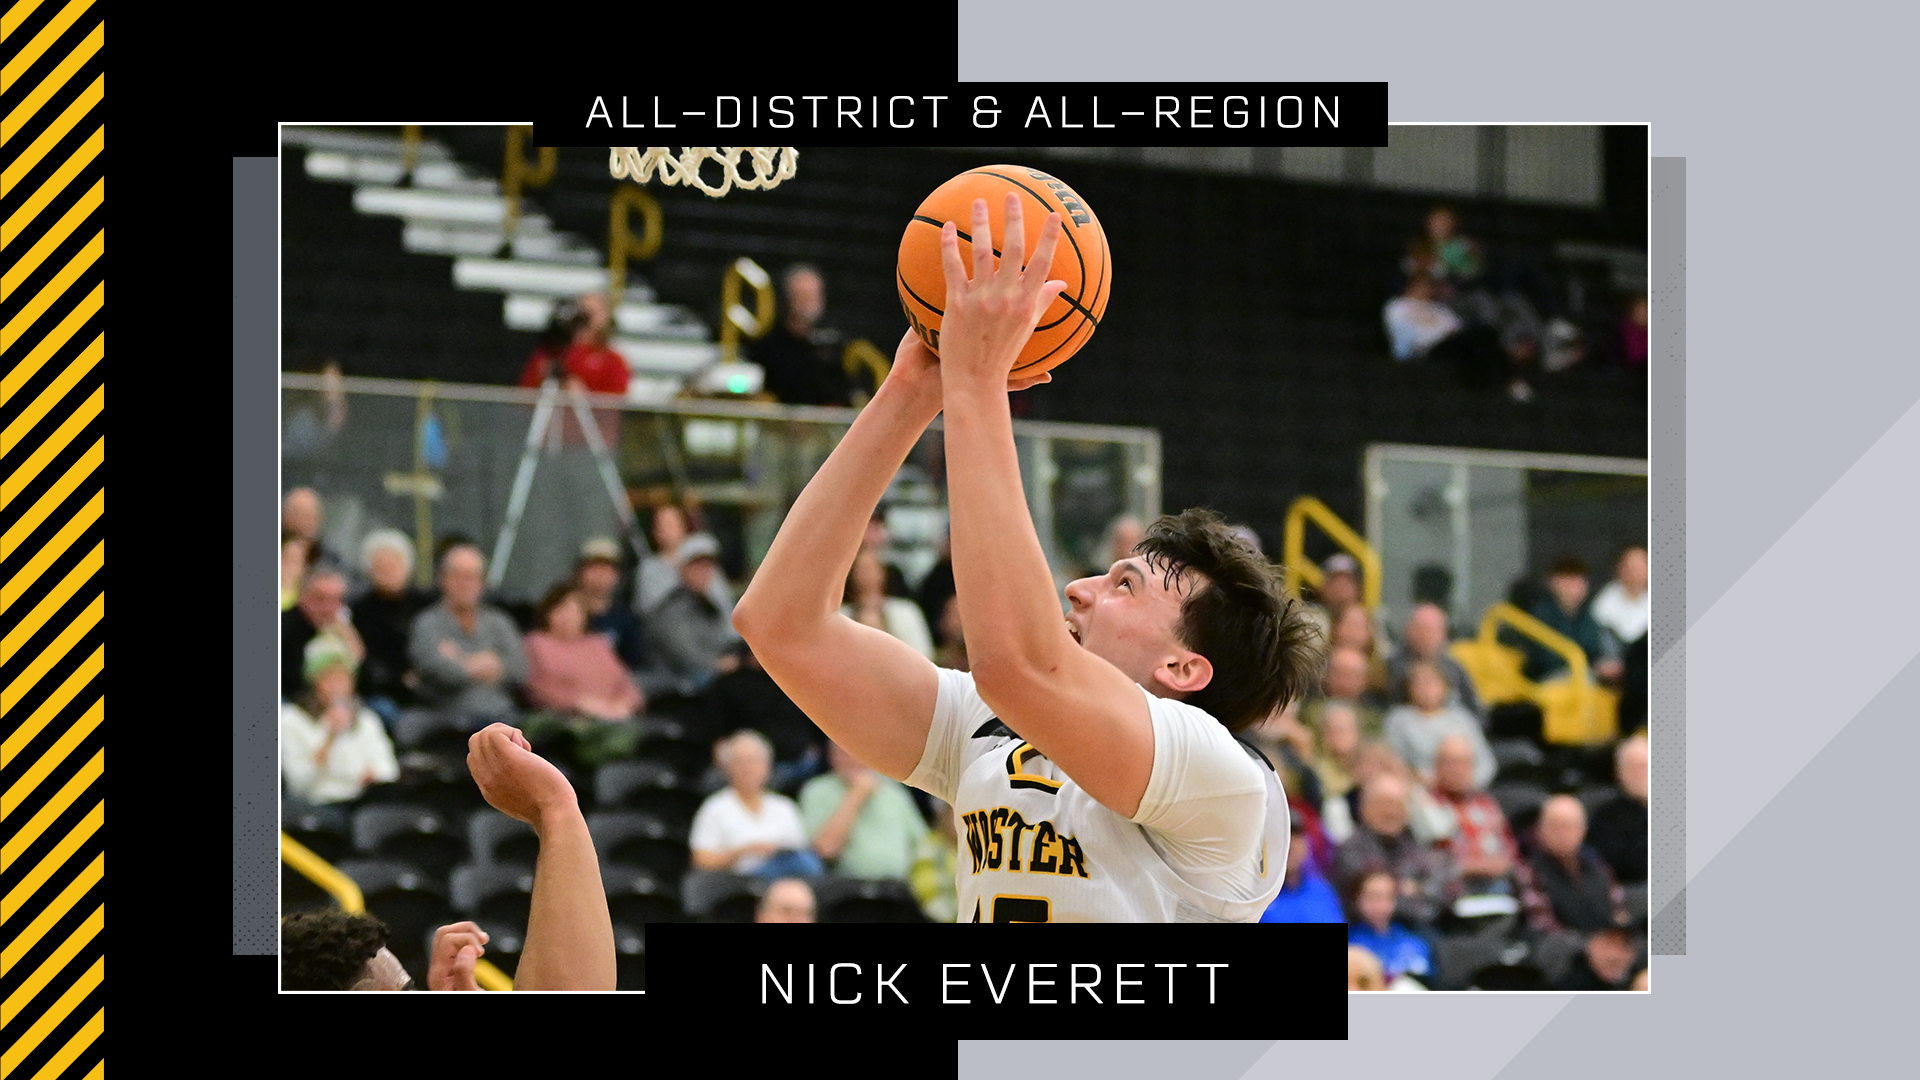 Nick Everett, Wooster Basketball